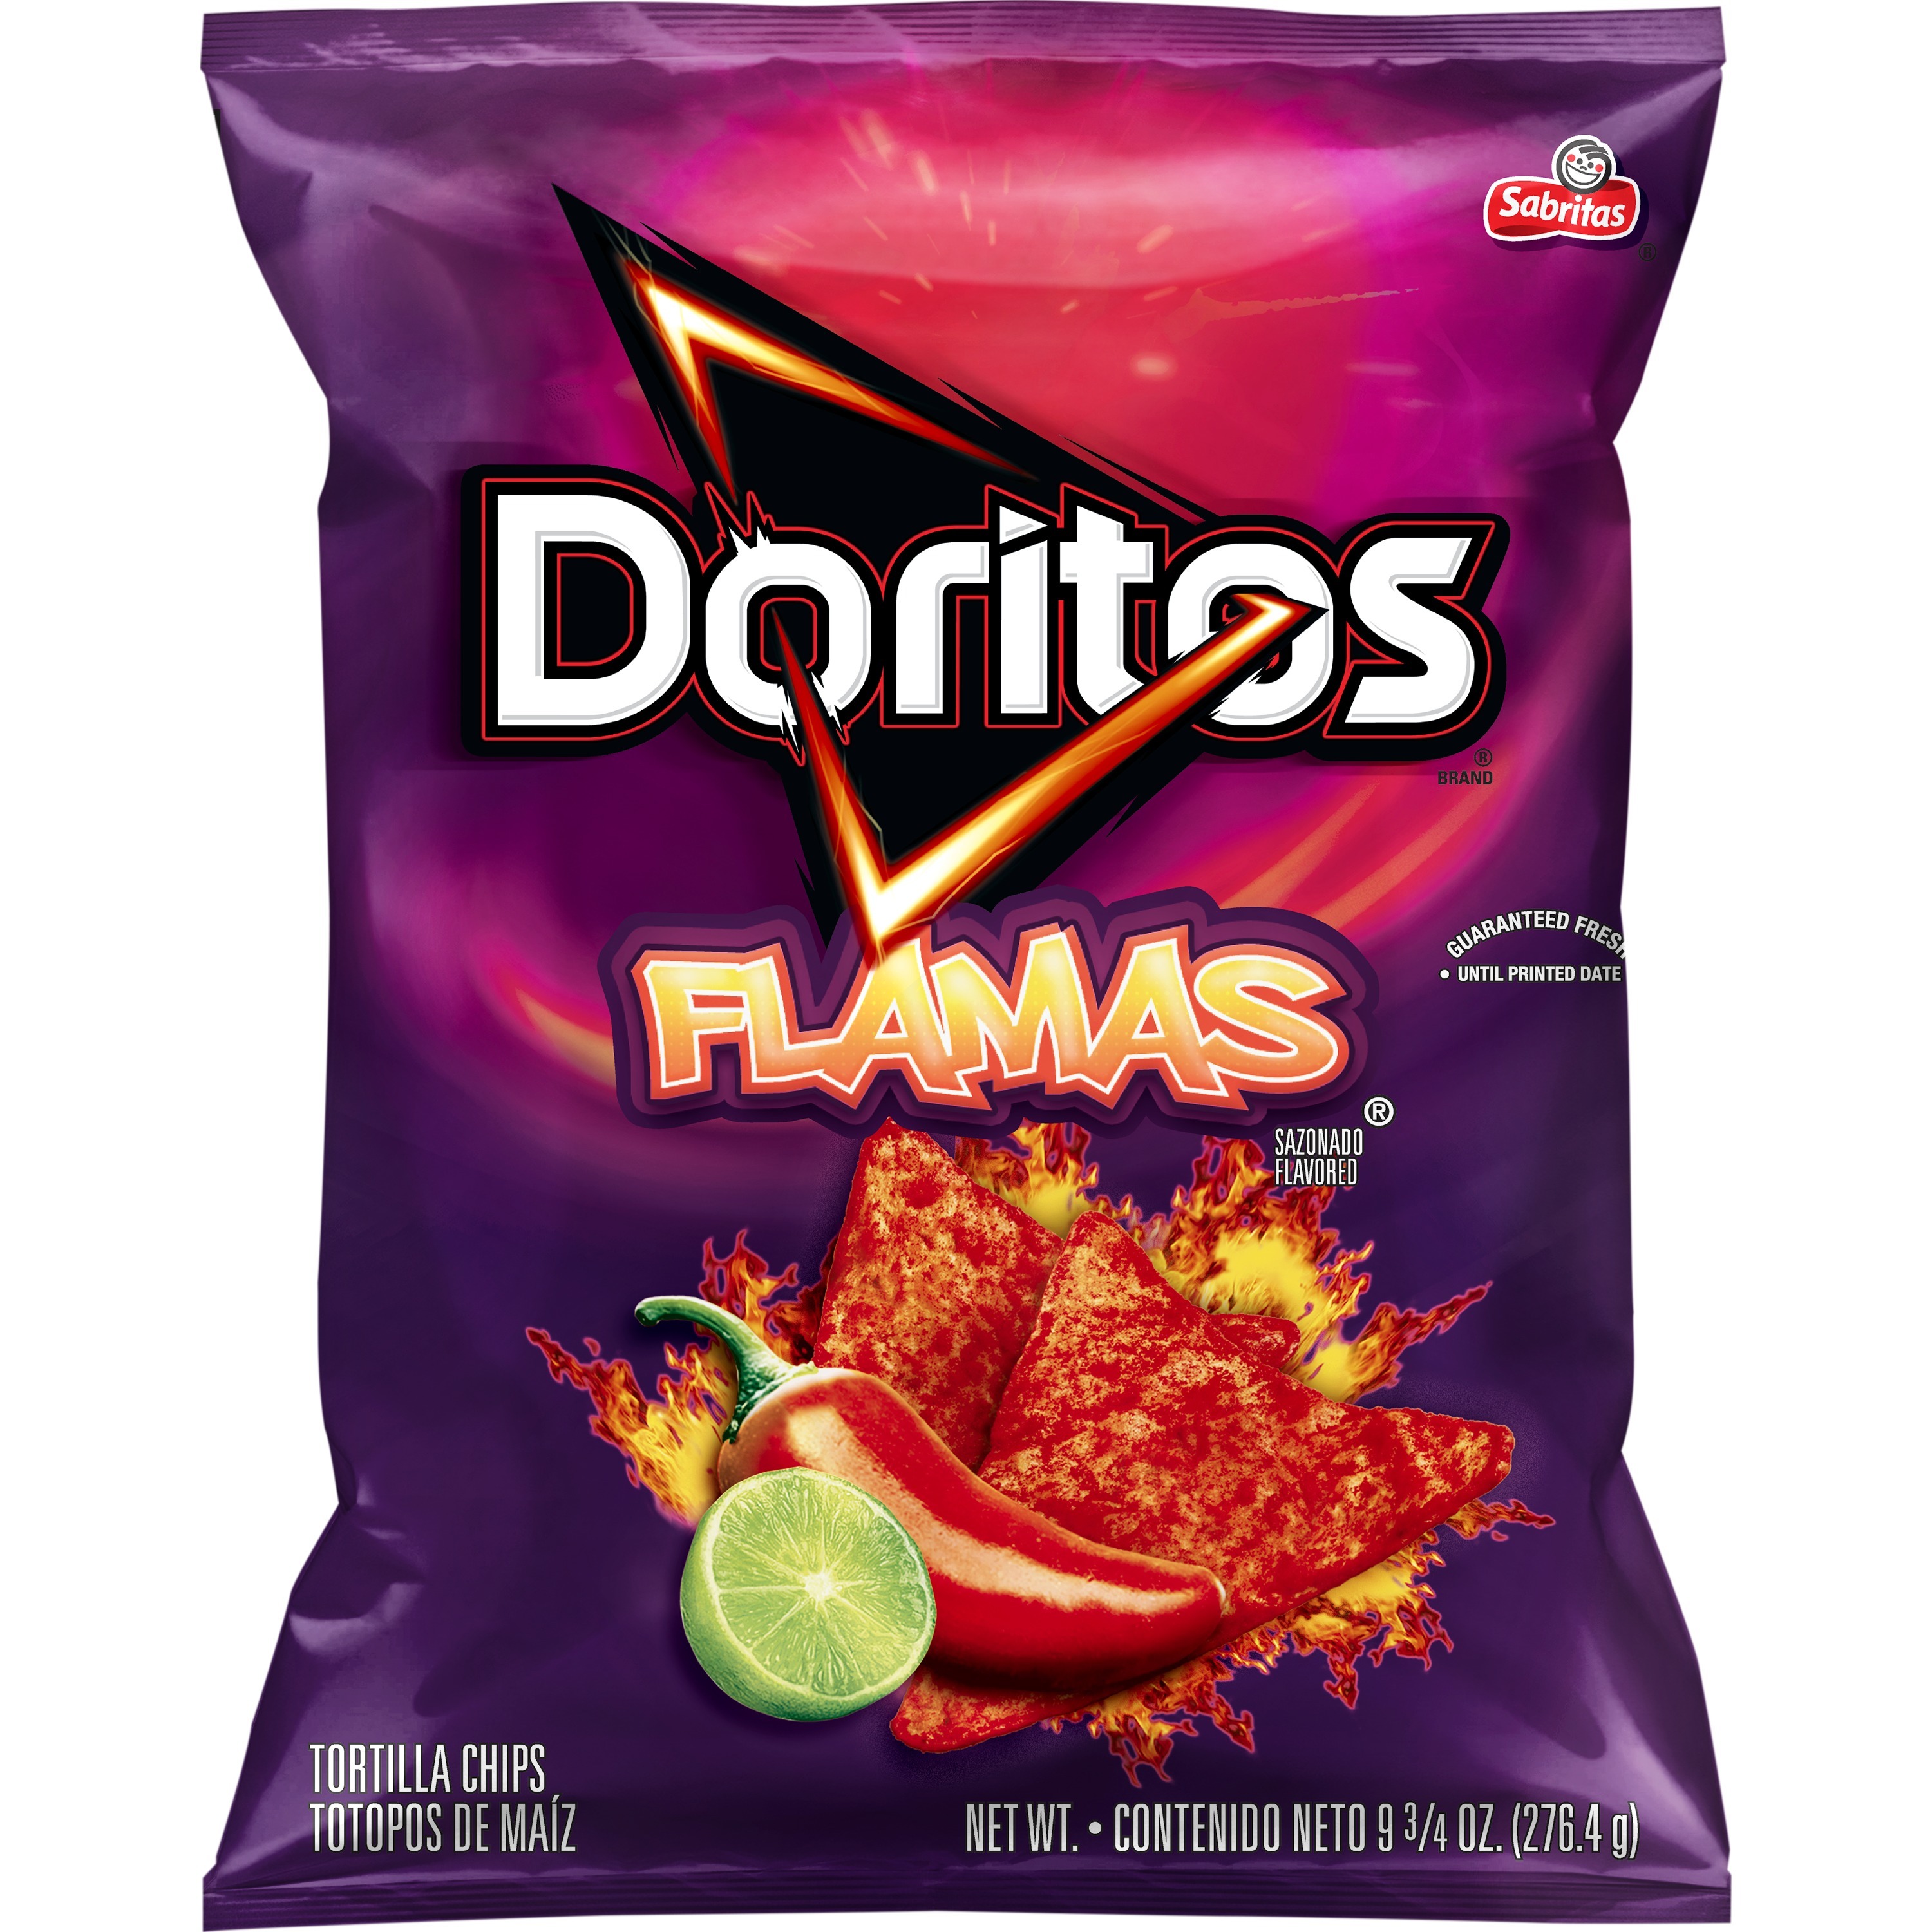 Doritos Flamas Flavored Tortilla Chips, 9.75 oz Bag - image 1 of 5